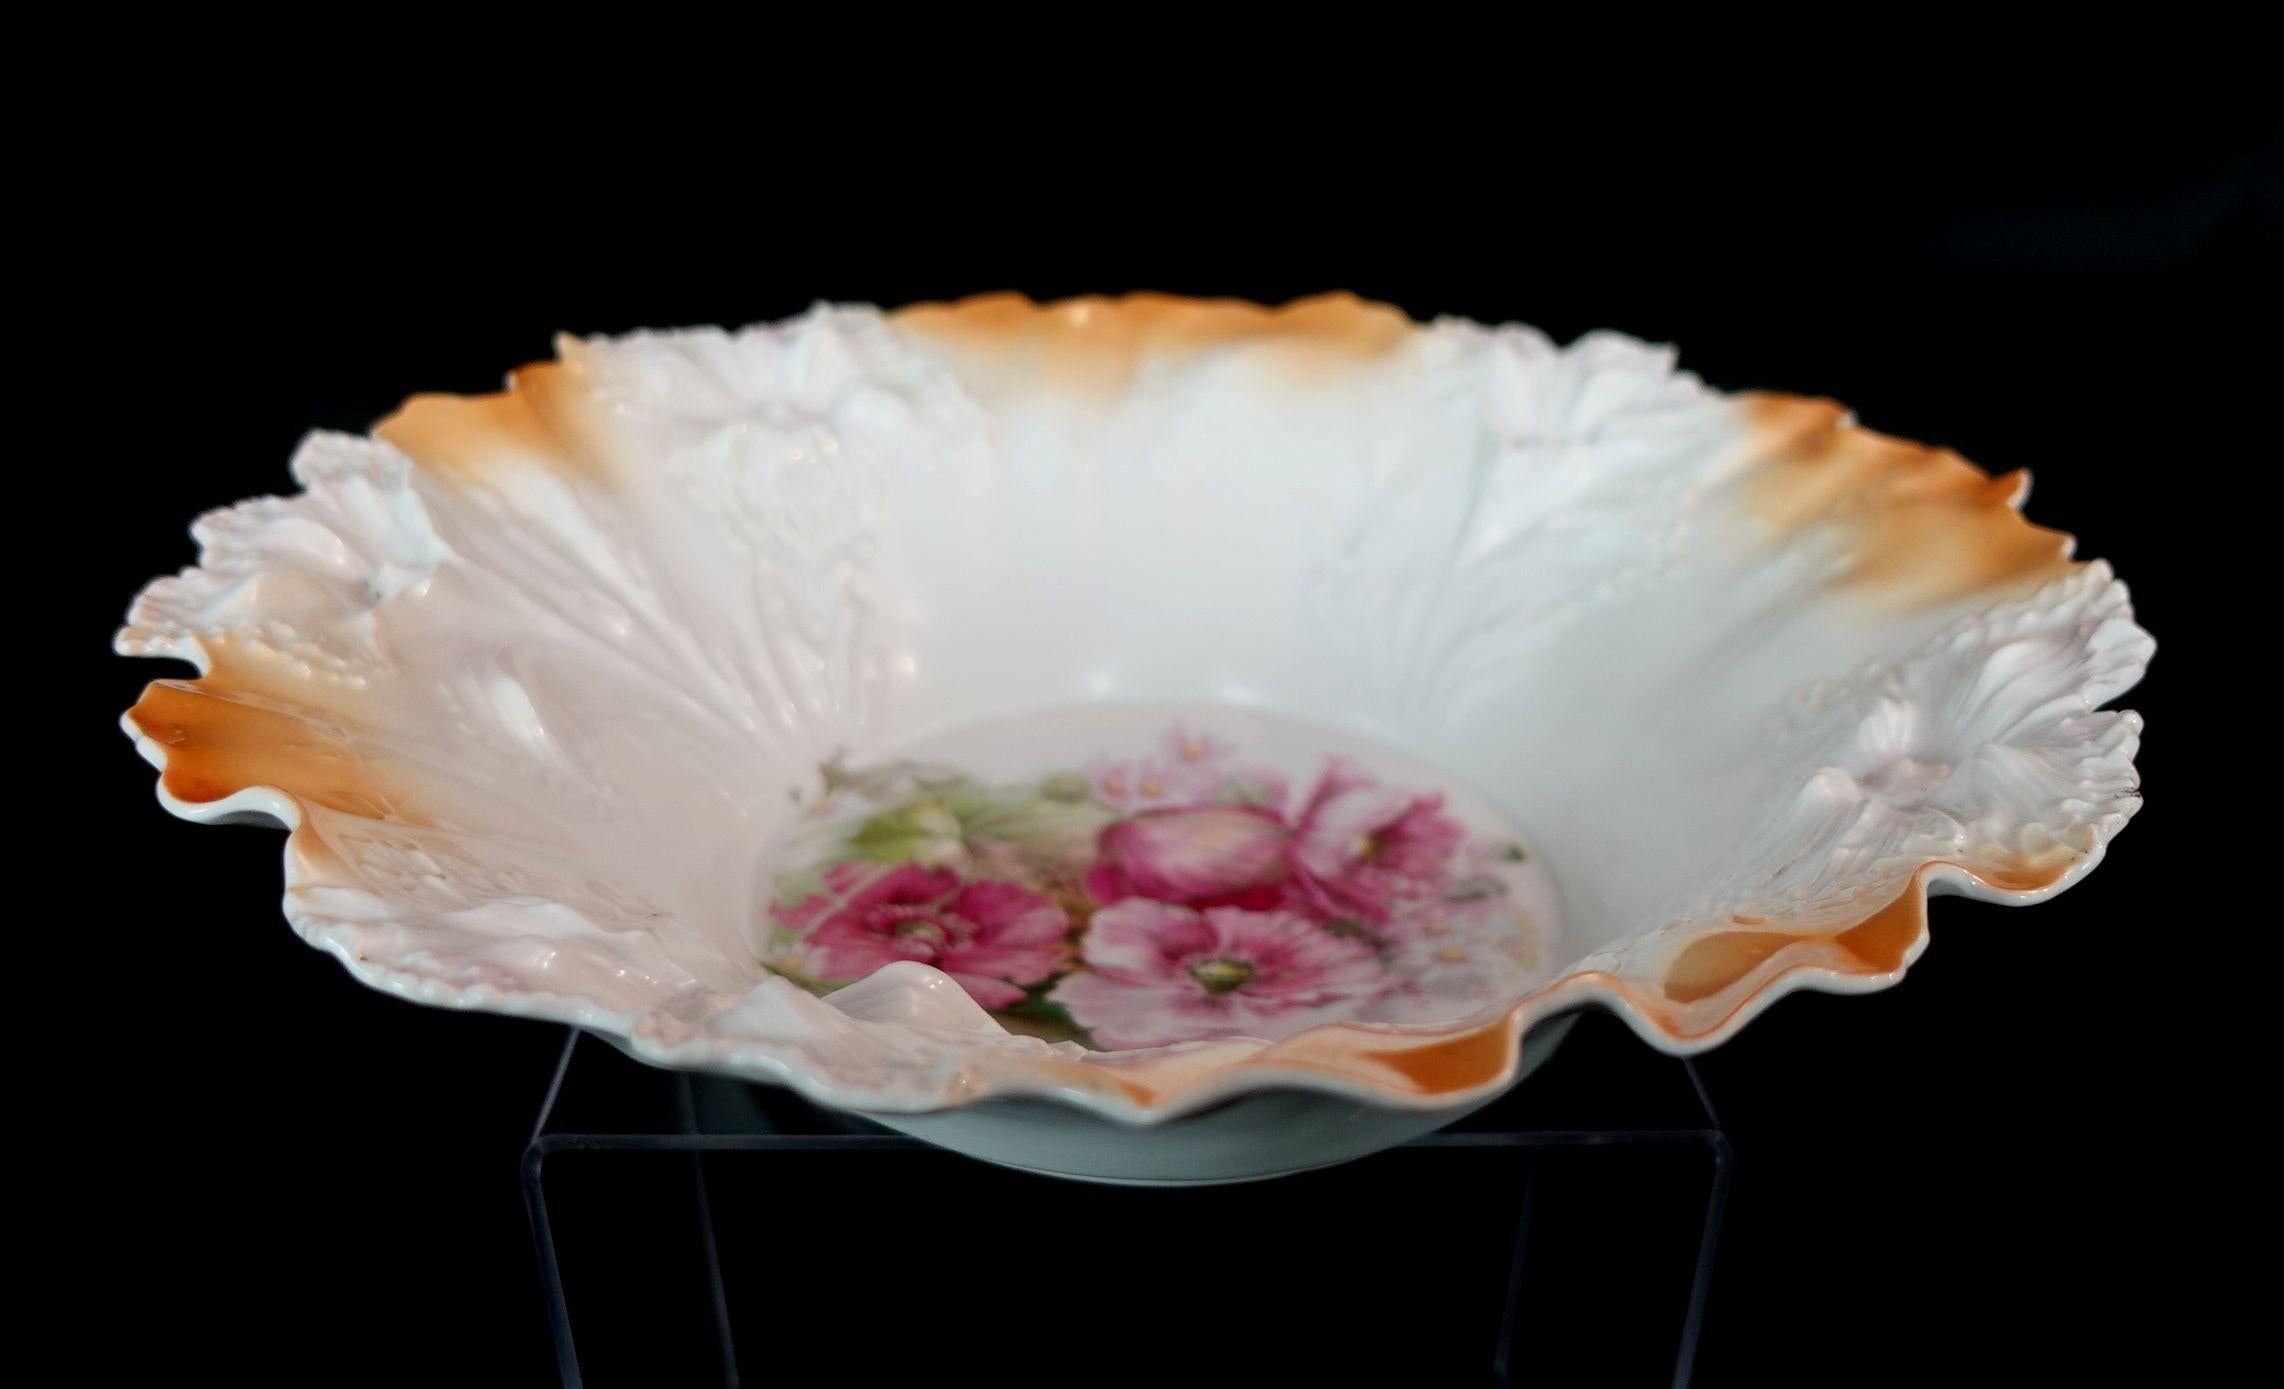 Un magnifique bol en porcelaine allemande RS Prussia dans de jolies couleurs multiples, le centre du bol a beaucoup de belles fleurs en particulier, les roses présentant également dans différentes couleurs, une œuvre d'art très adorable.
 